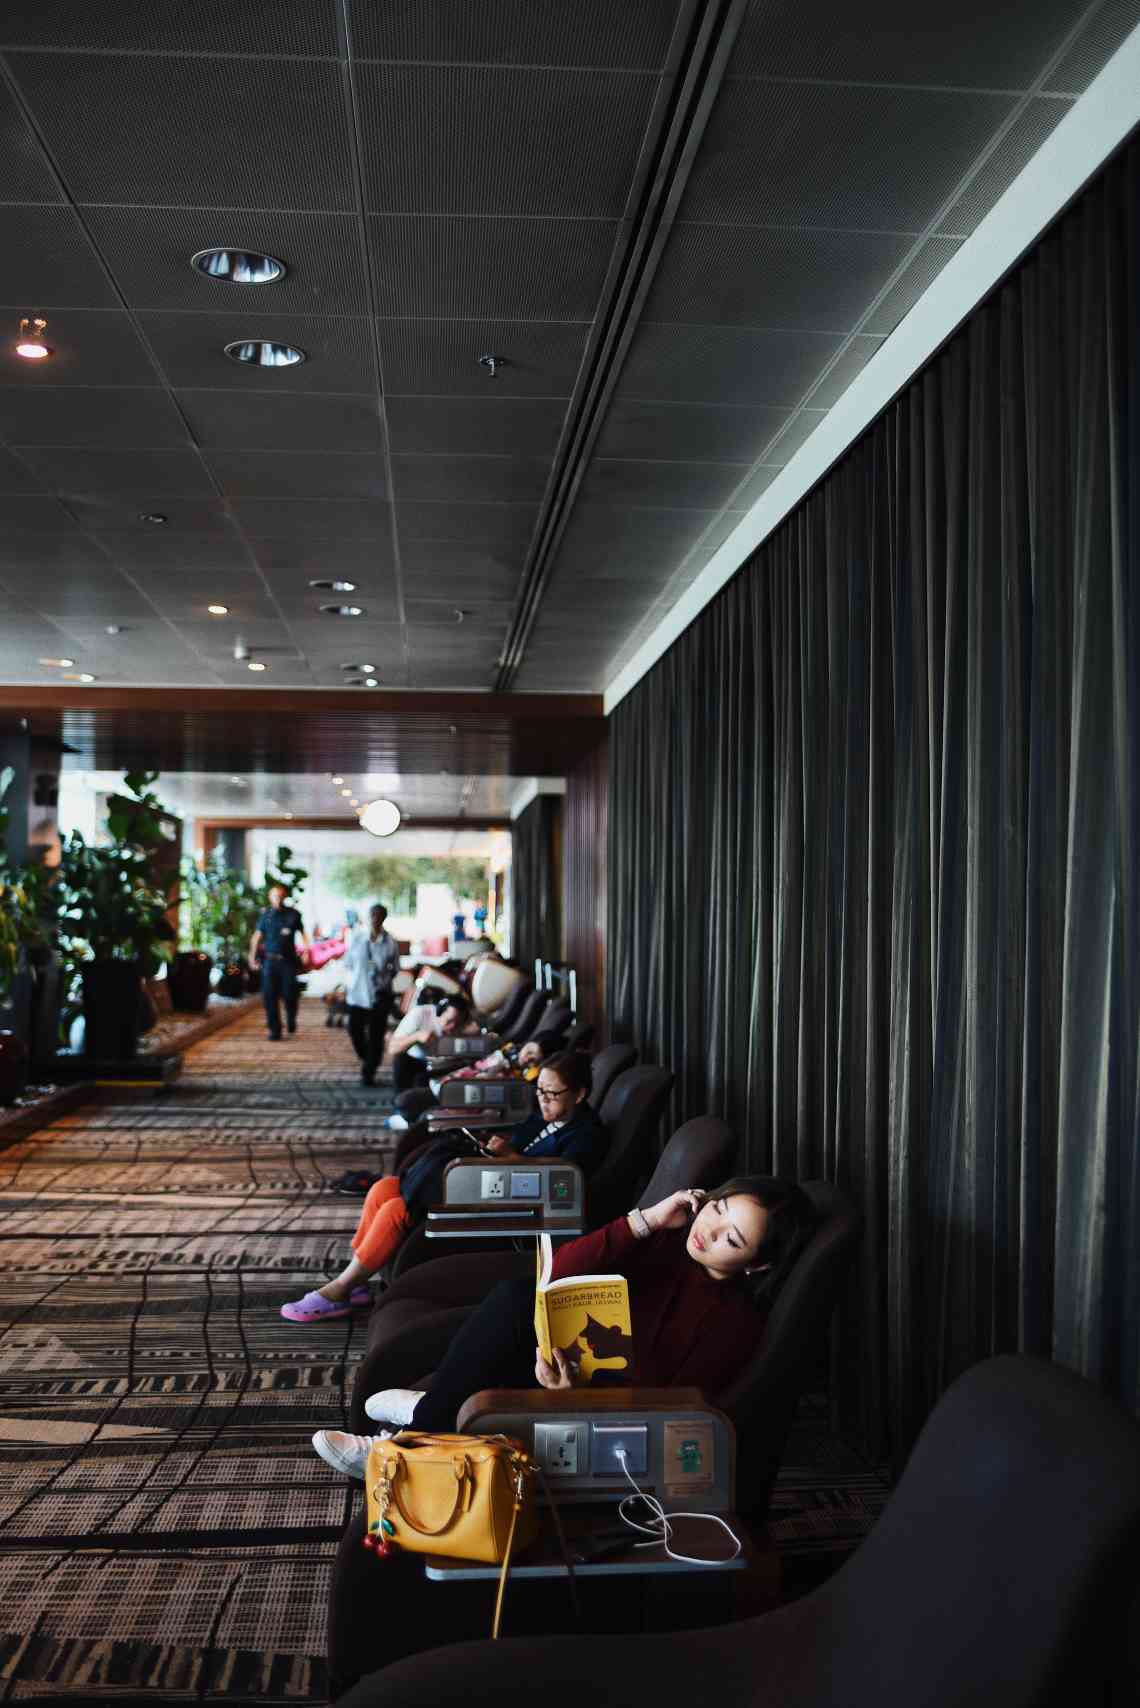 Terminal 3 Transit Snooze Lounge